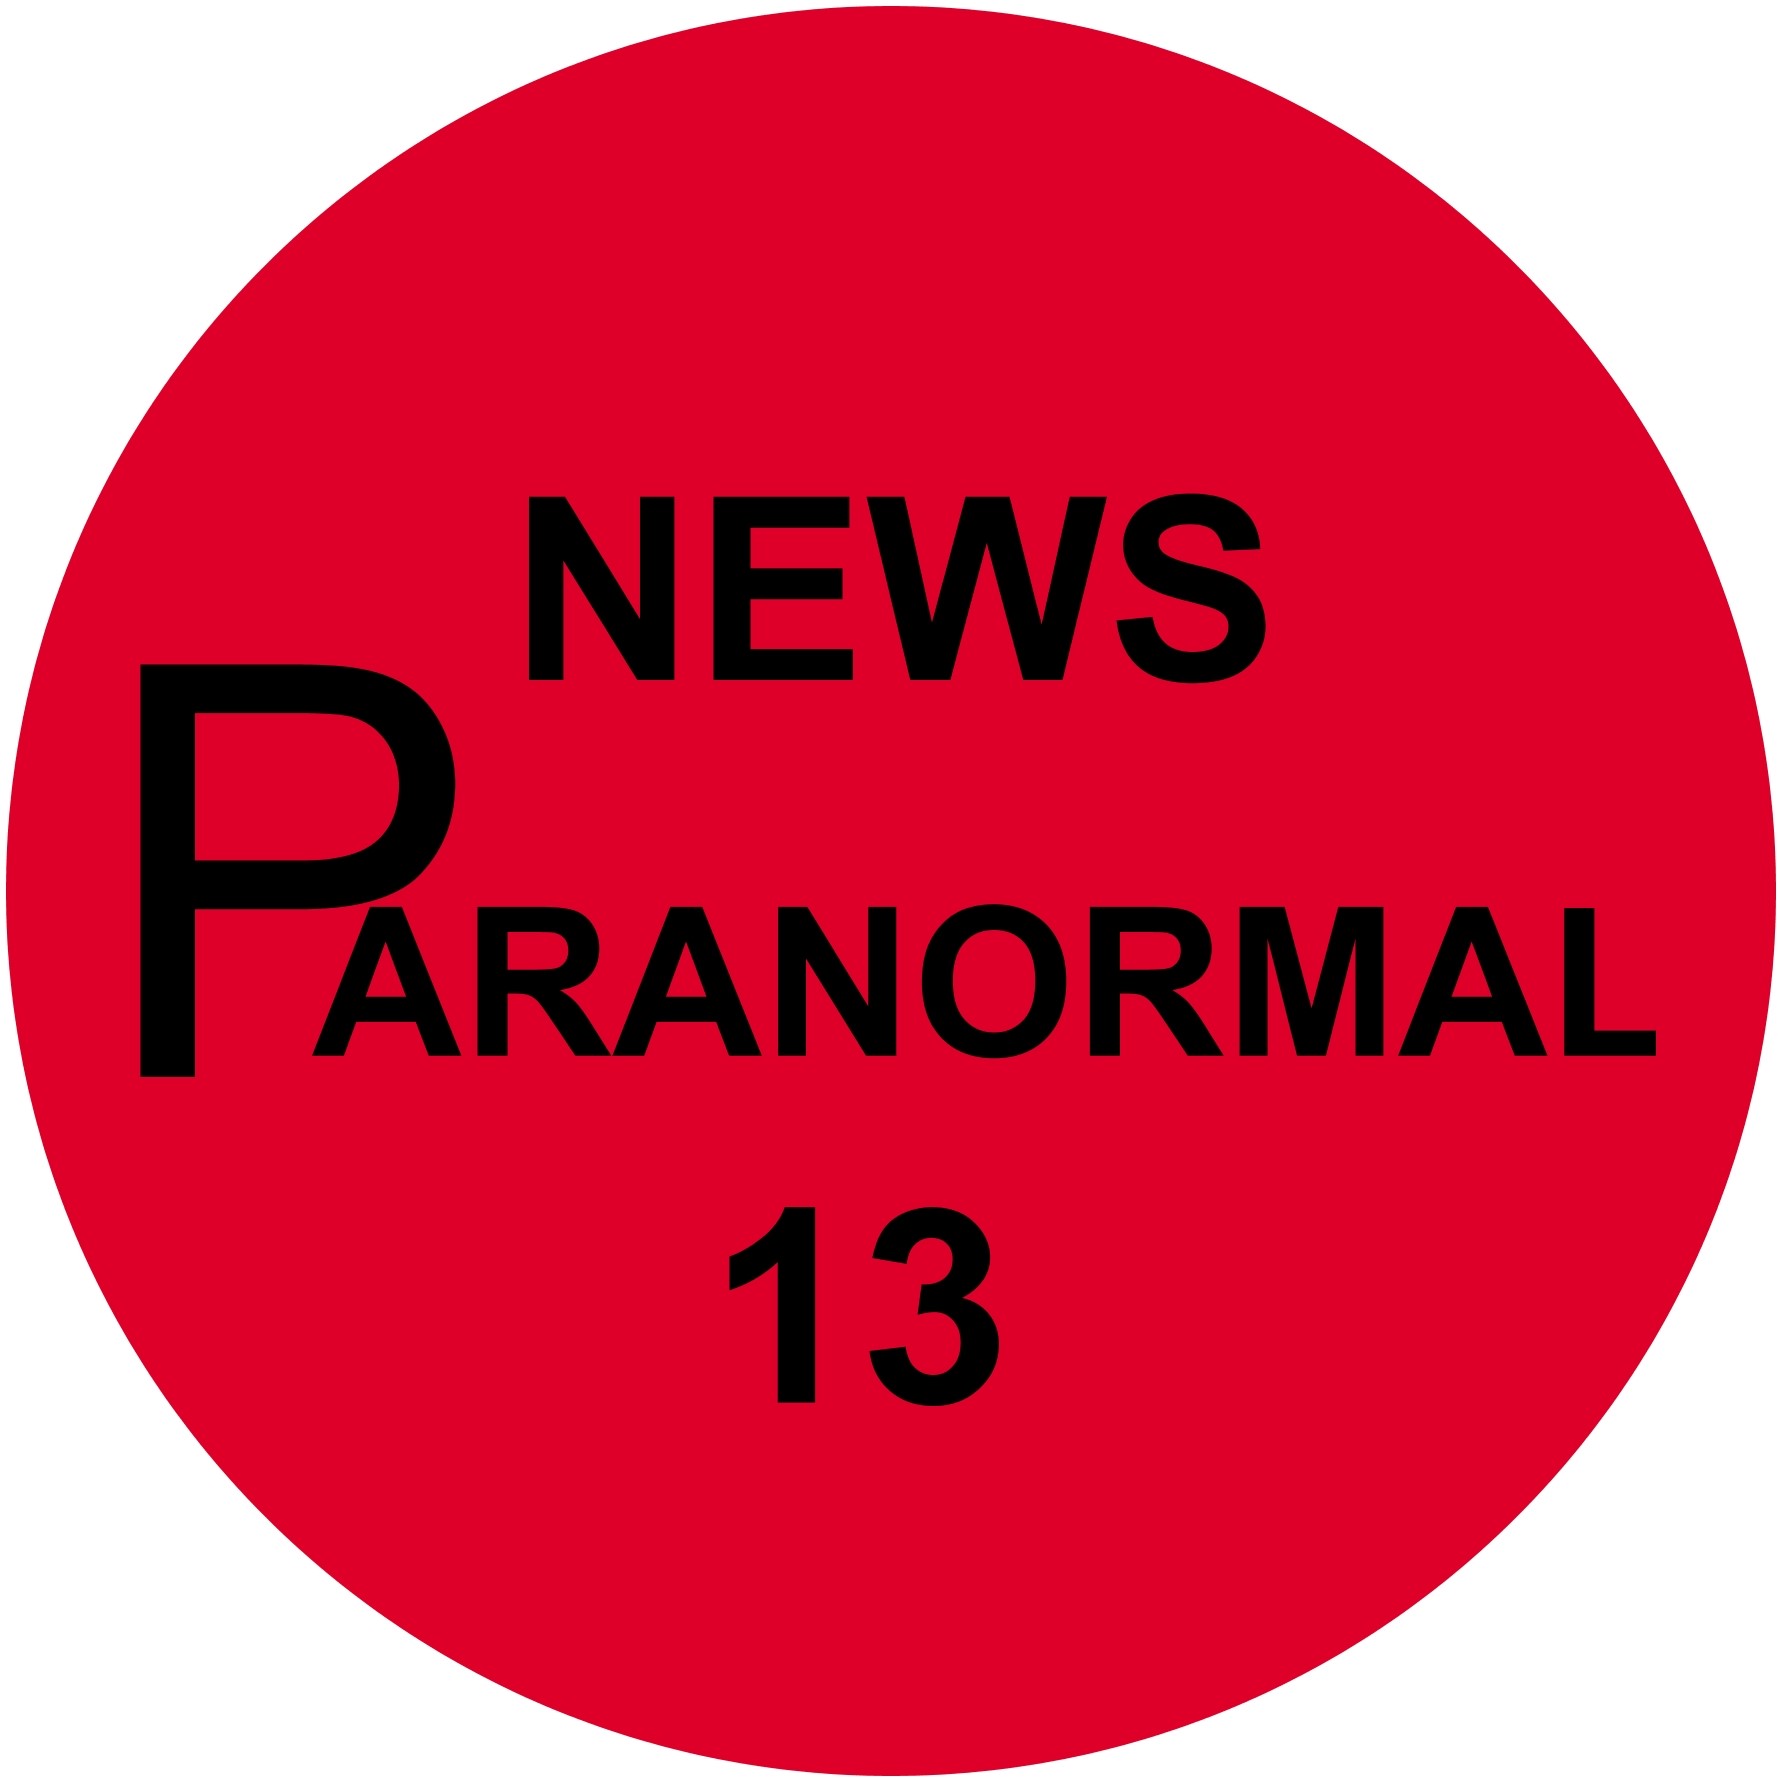 Paranormal 13 News